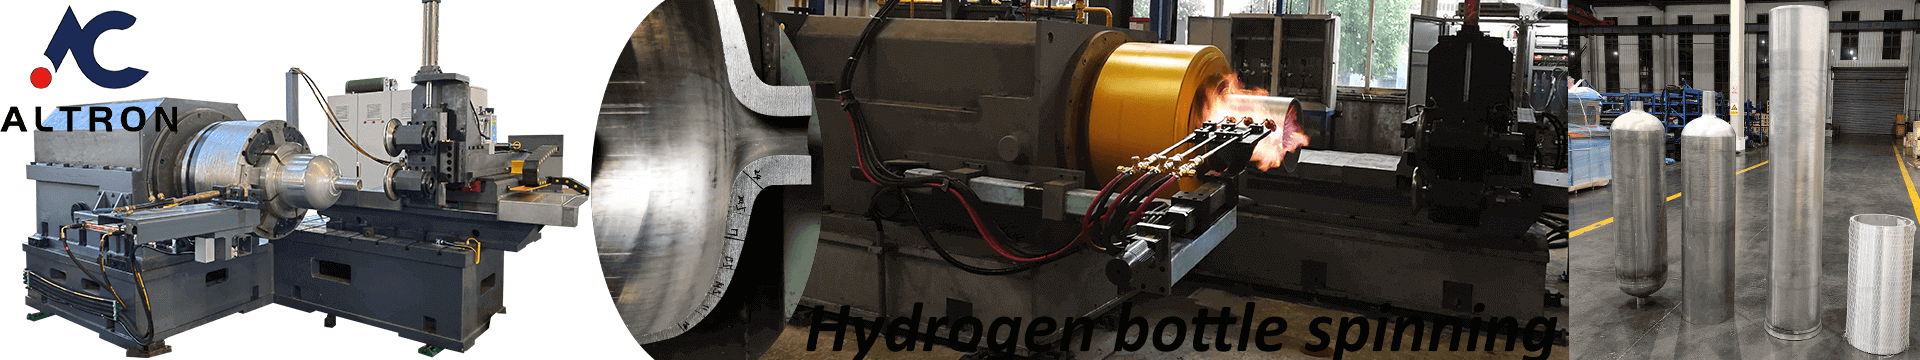 Hydrogen bottle metal spinning machine